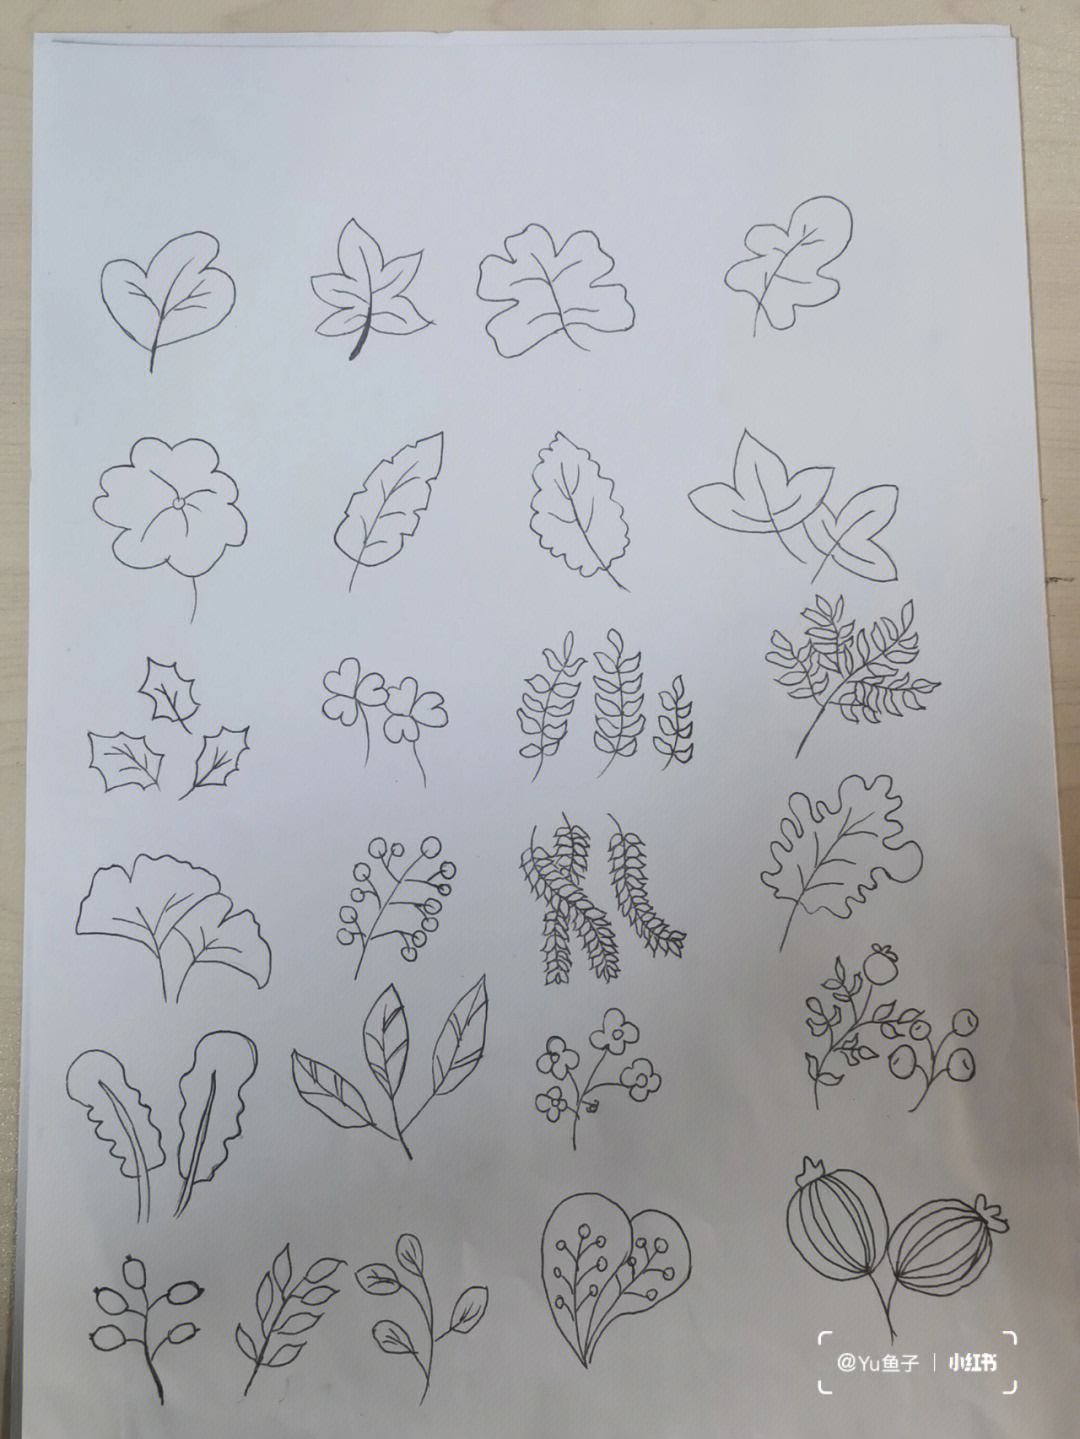 叶子的各种形状和画法图片